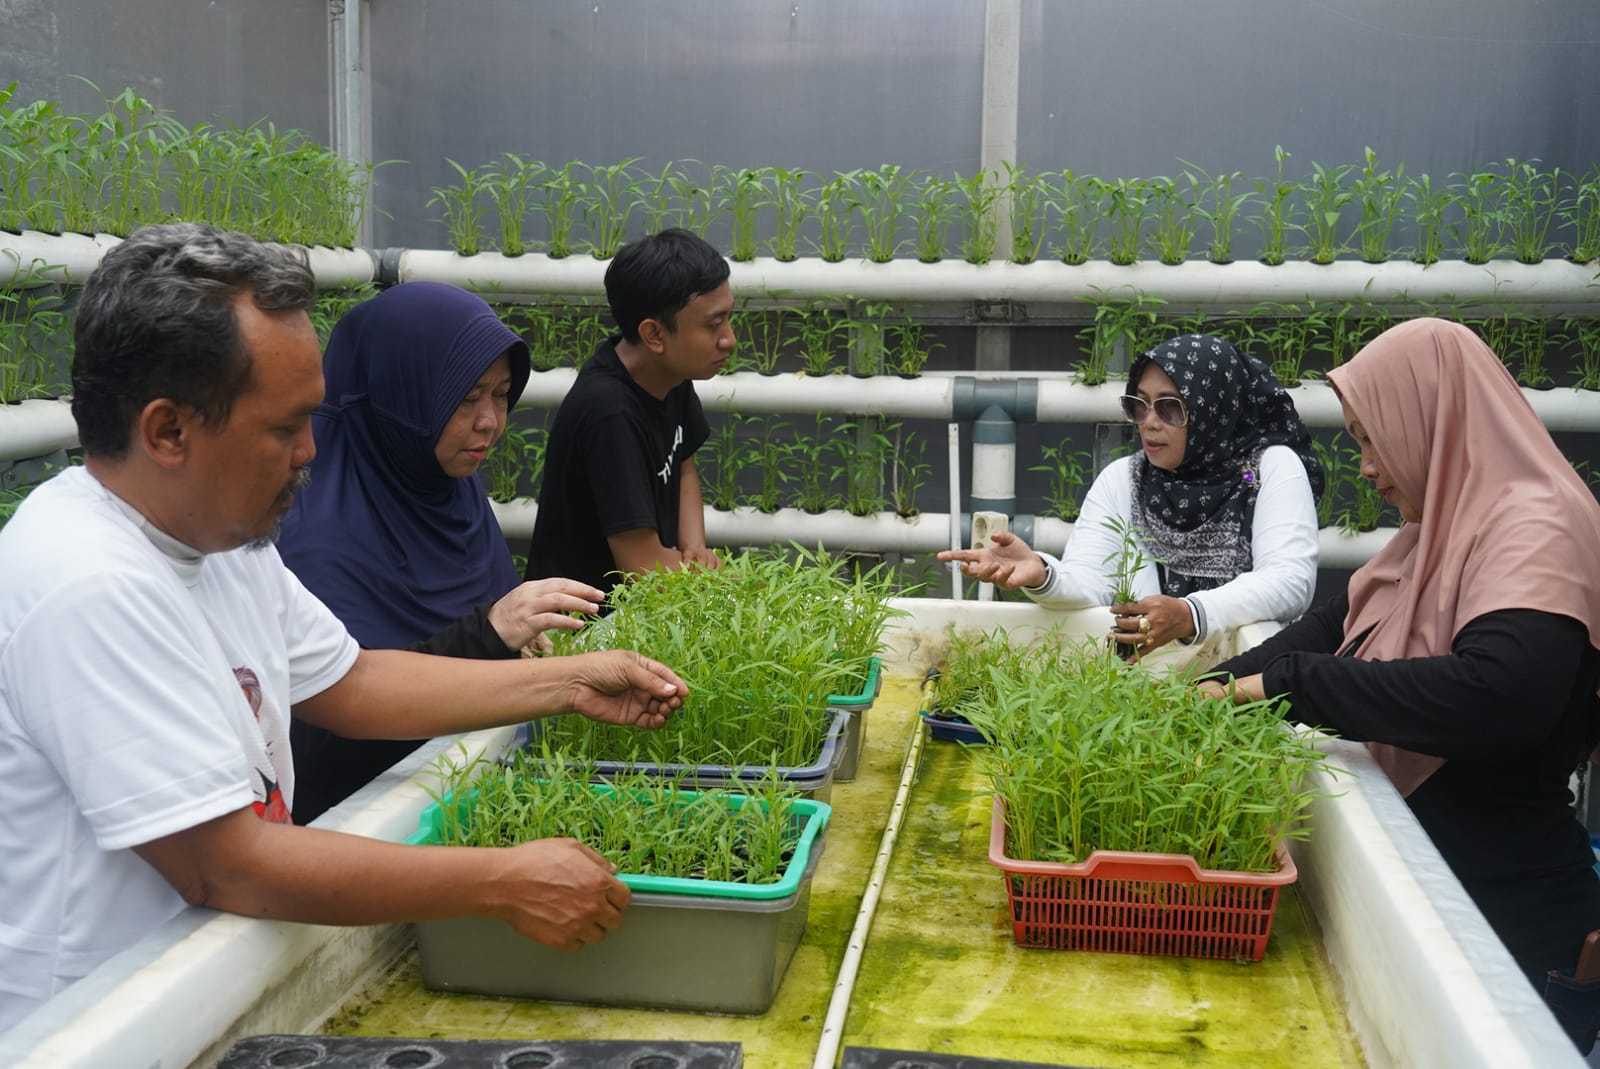 Dukung Inovasi Masyarakat, OMG Bantu Renovasi Greenhouse di Pisangan Timur